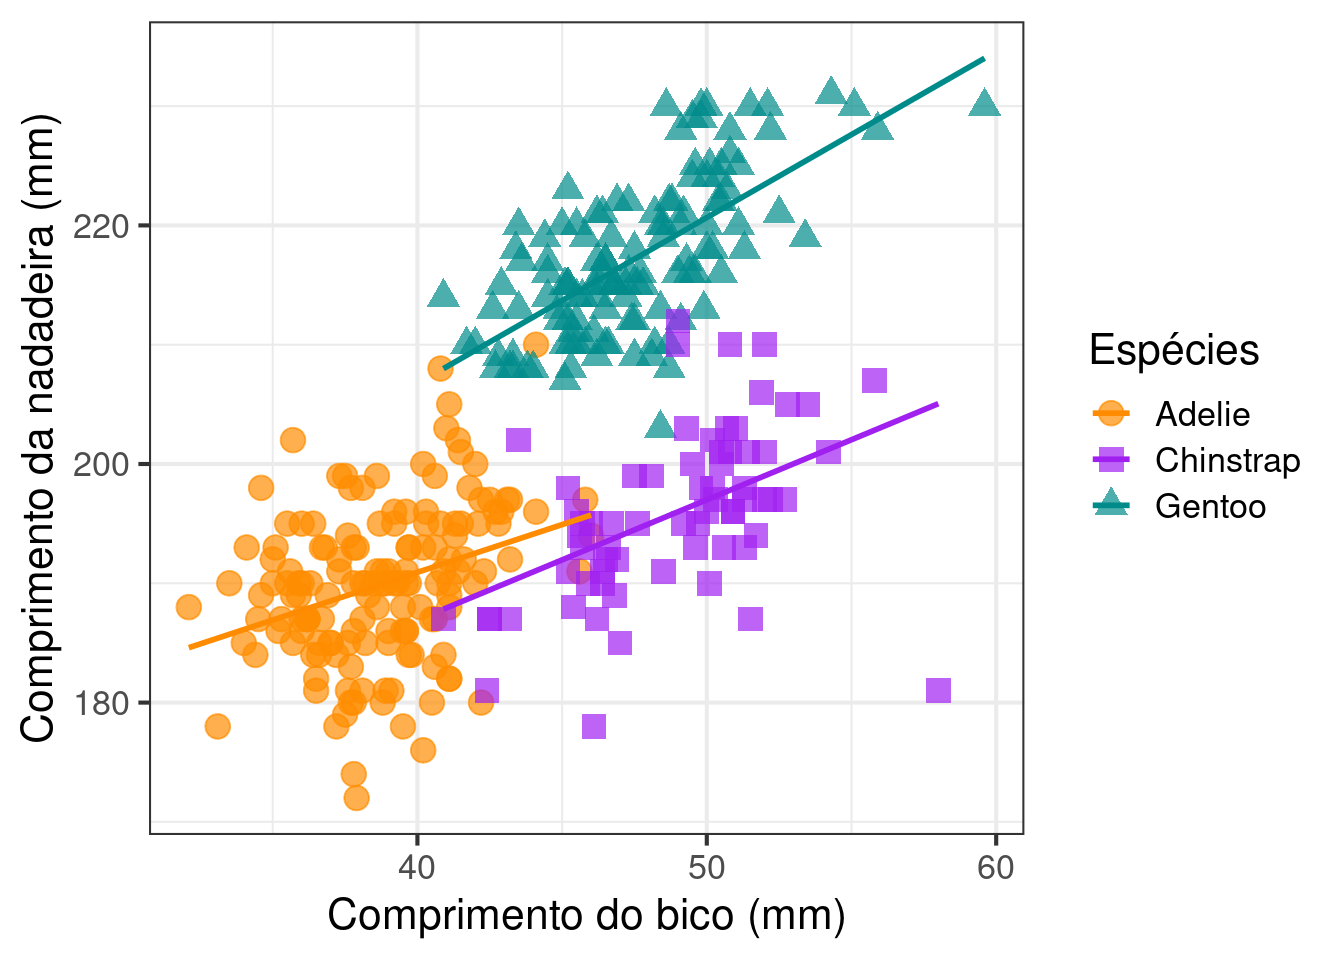 Gráfico de dispersão relacionando as variáveis `comprimento_bico` e `comprimento_nadadeira` para cada espécie de penguim, com ajustes finos.